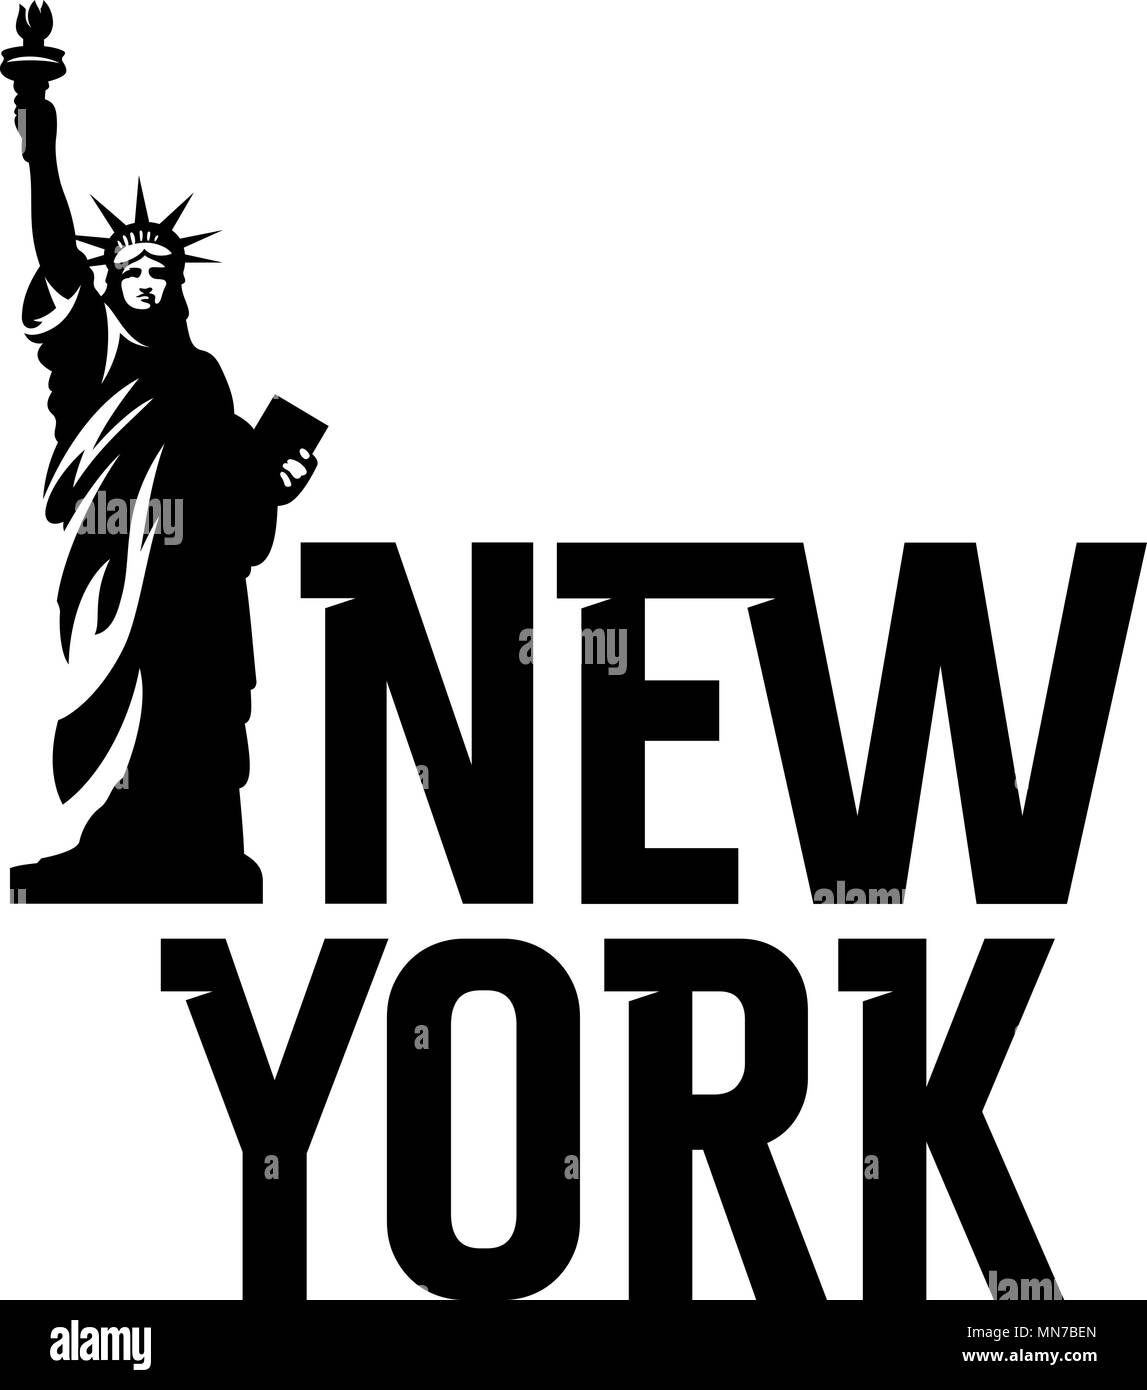 Le lettrage "New York" et la Statue de la liberté. T shirt apparel fashion design Illustration de Vecteur